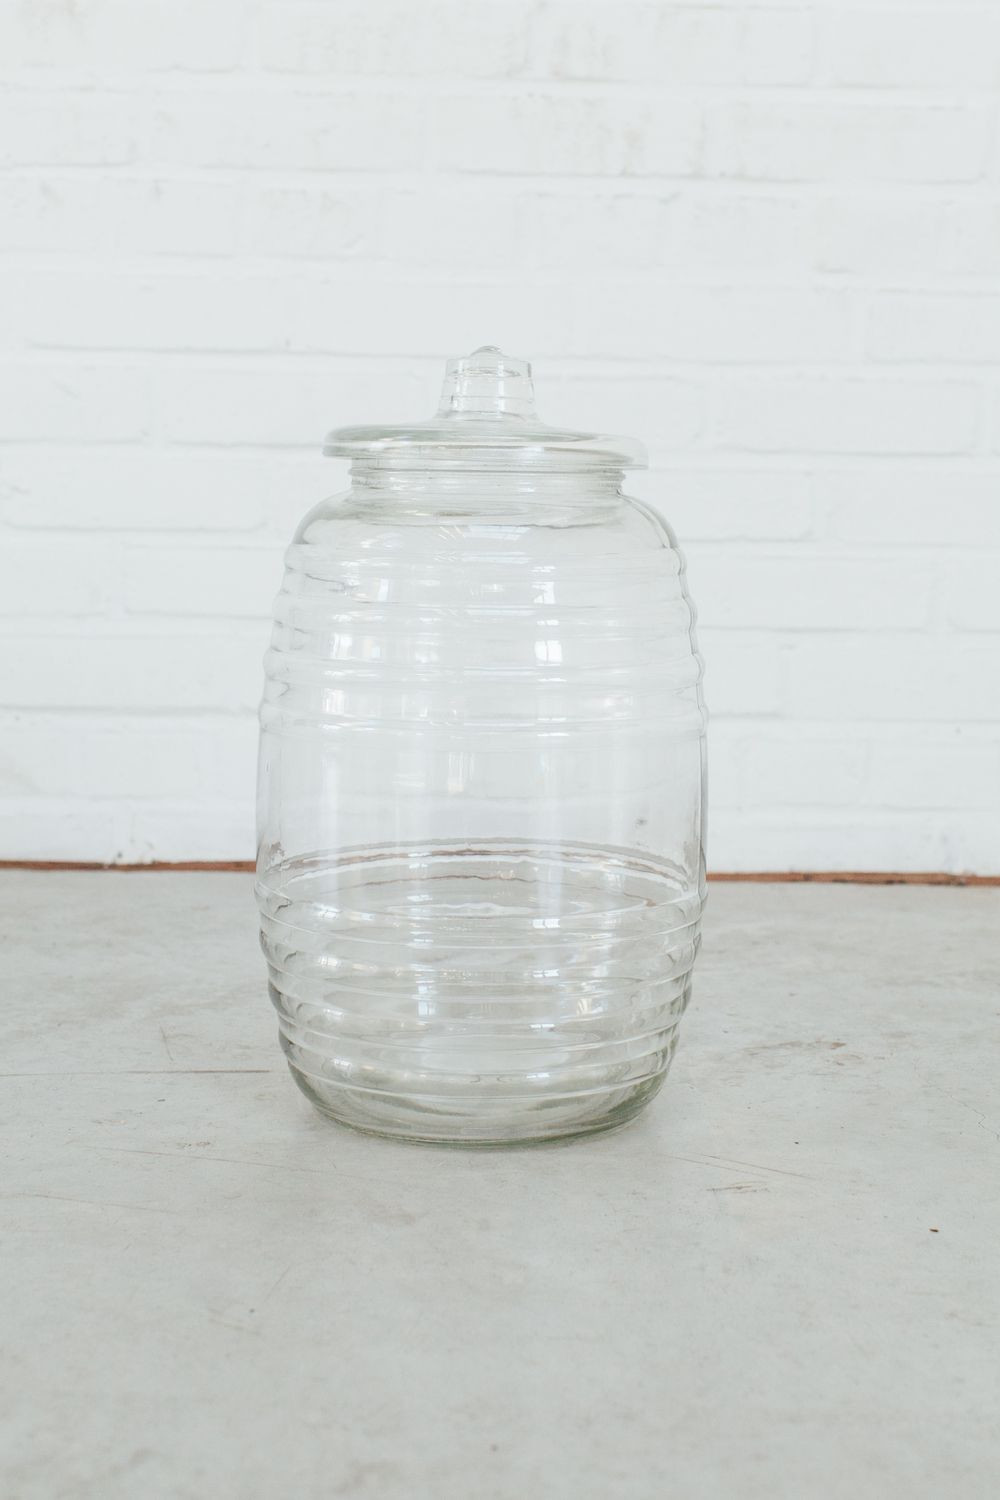 15 Trendy 10.5 Glass Cylinder Vase 2024 free download 10 5 glass cylinder vase of large glass jug prop rental by starlingonbond starling on bond in large glass jug prop rental by starlingonbond